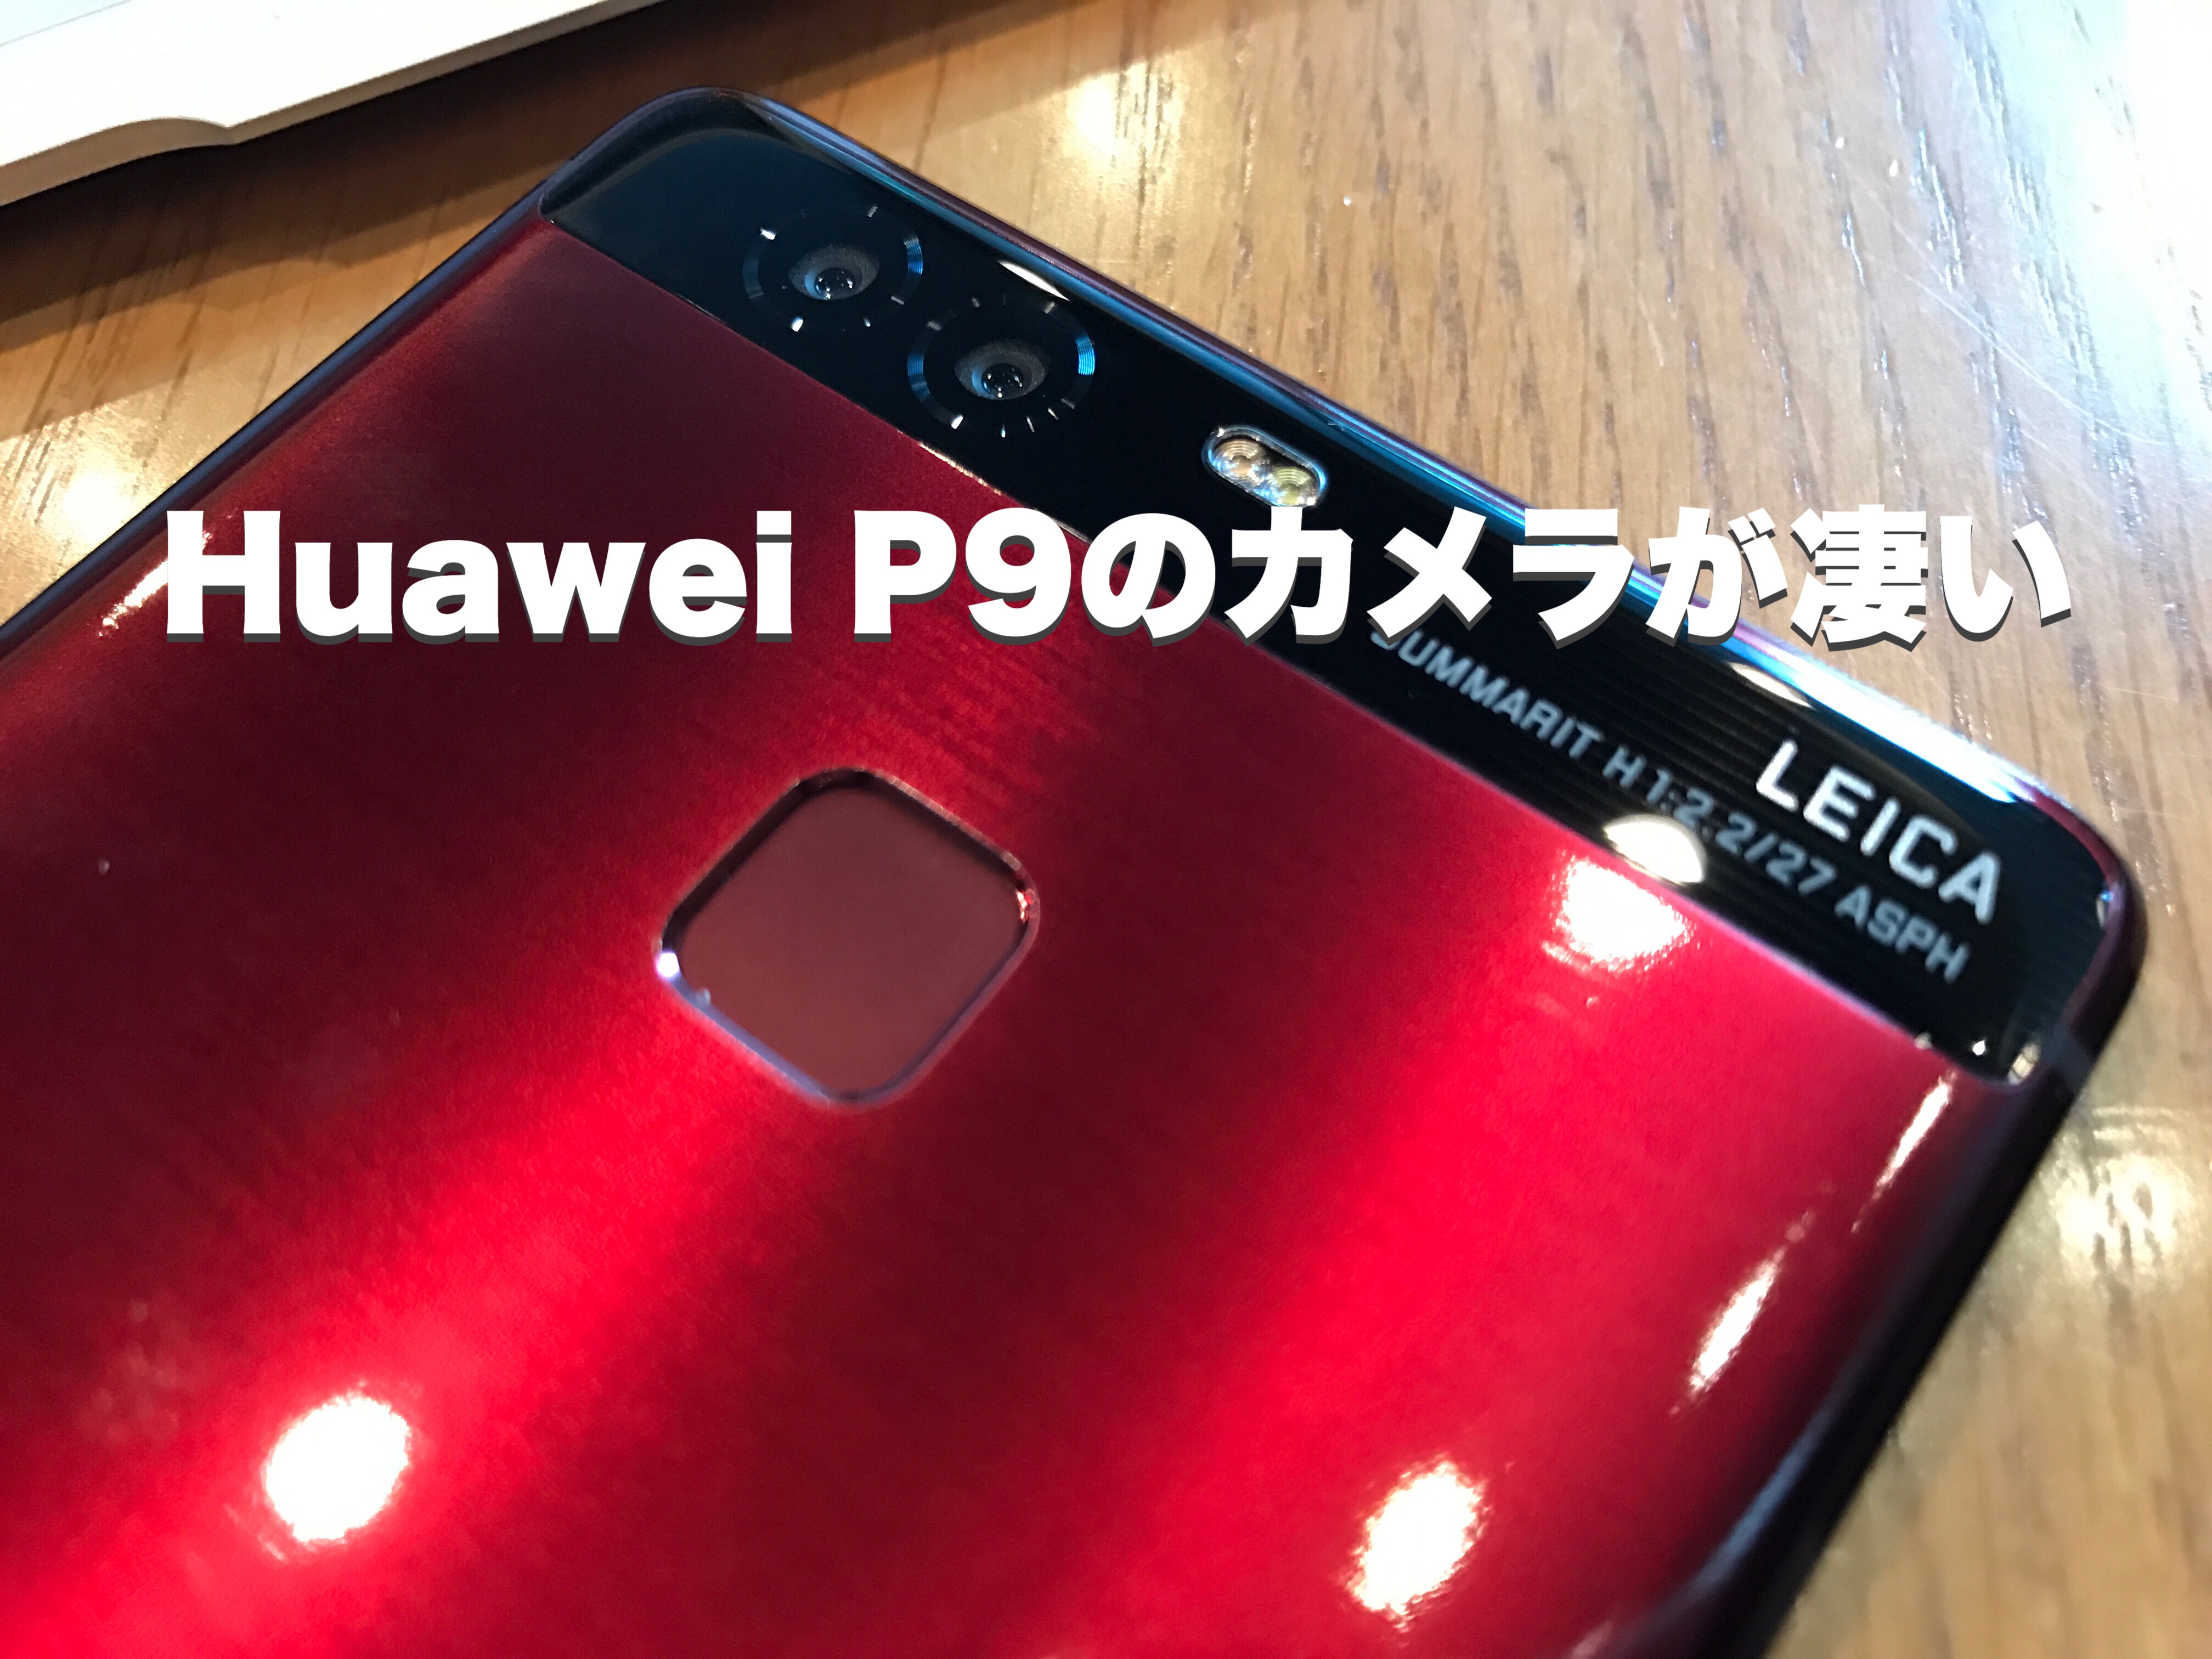 Huawei P9のカメラ性能が凄い